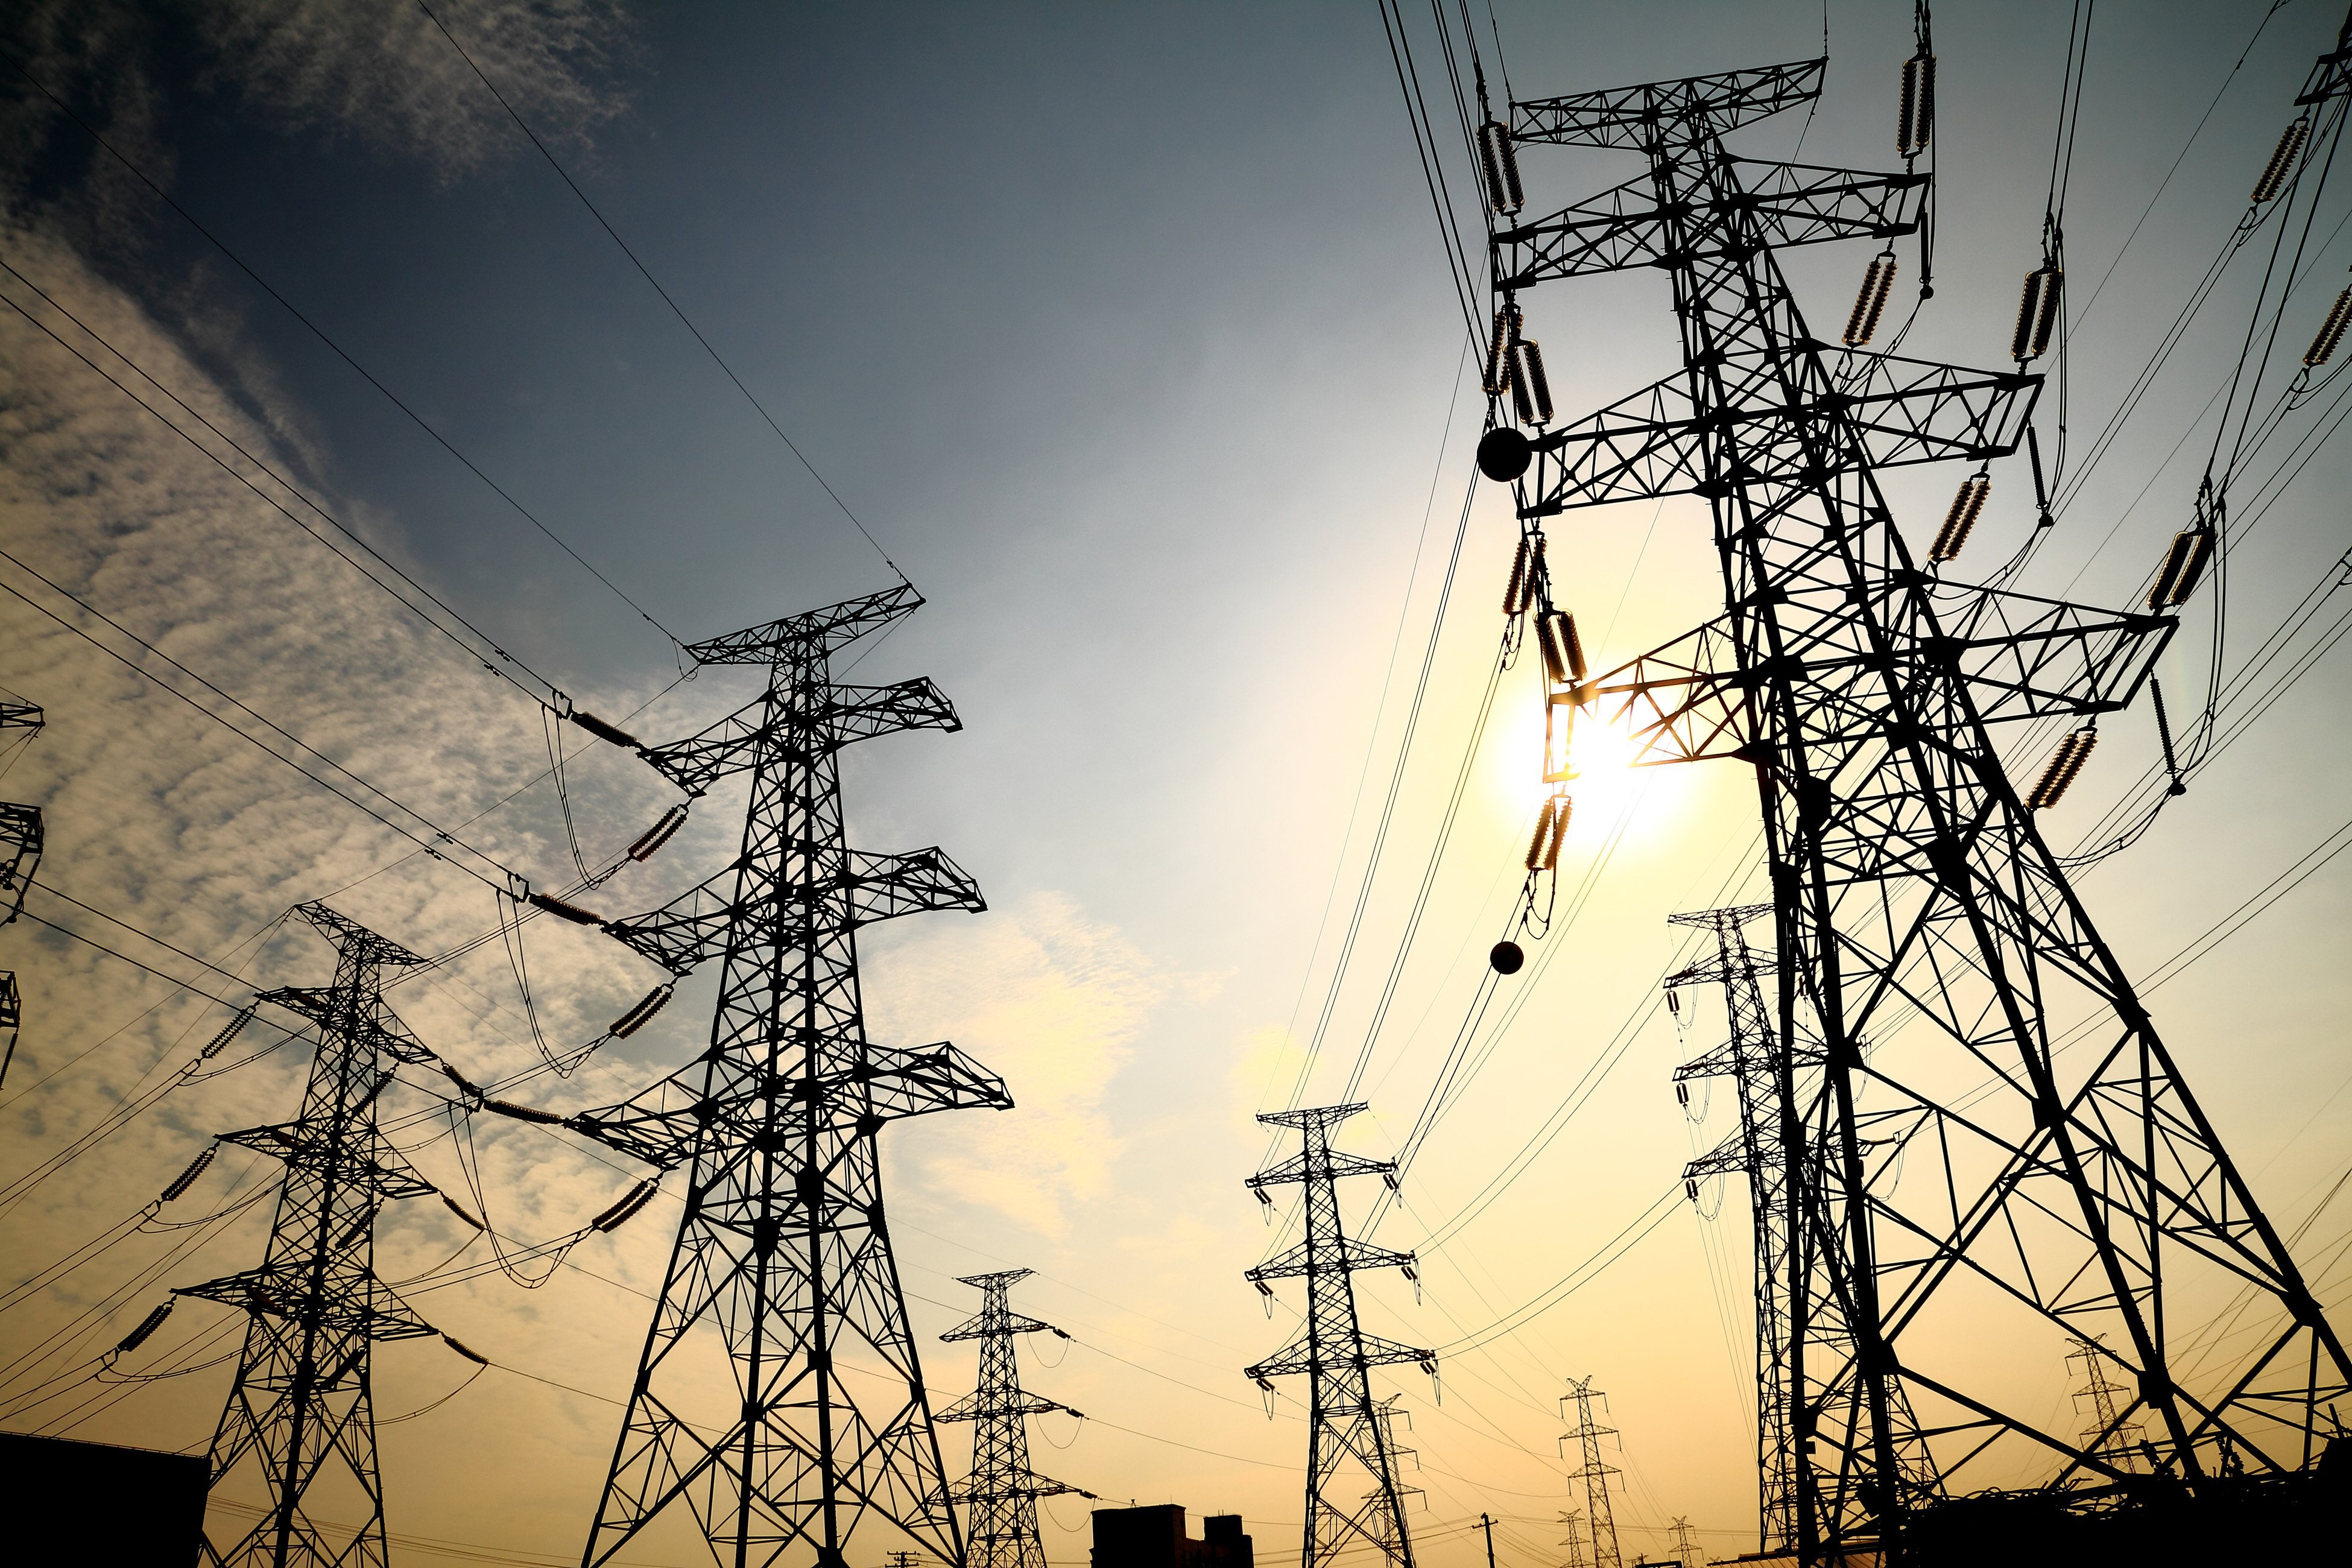 Վրաստանի ներկրված էլեկտրաէներգիայի 64 տոկոսը բաժին է ընկնում Ադրբեջանին